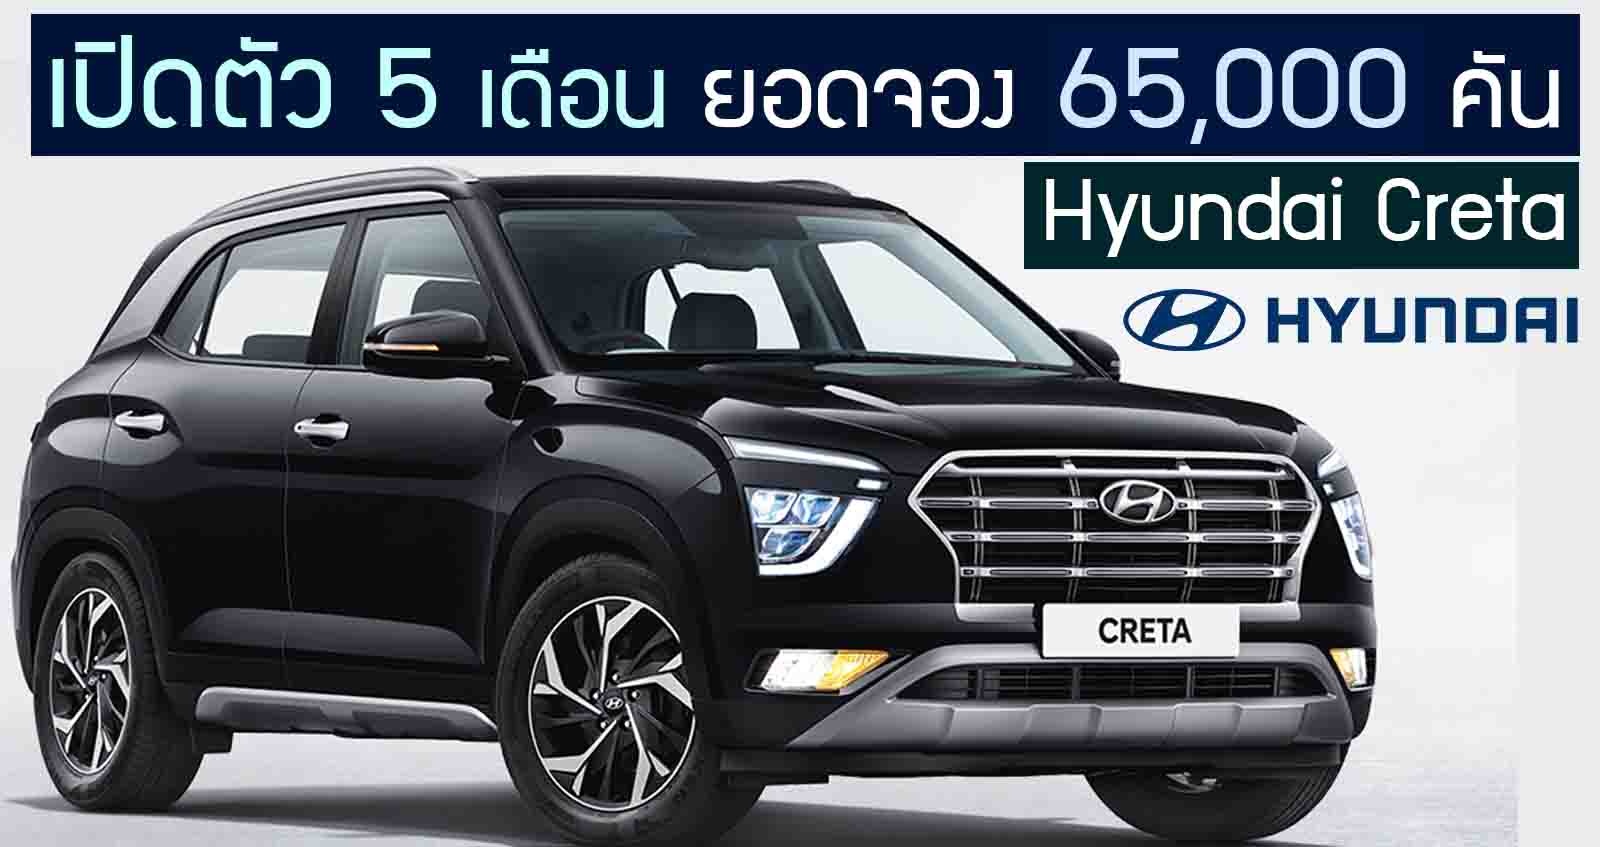 Hyundai Creta เปิดตัว 5 เดือน ยอดจอง 65,000 คัน